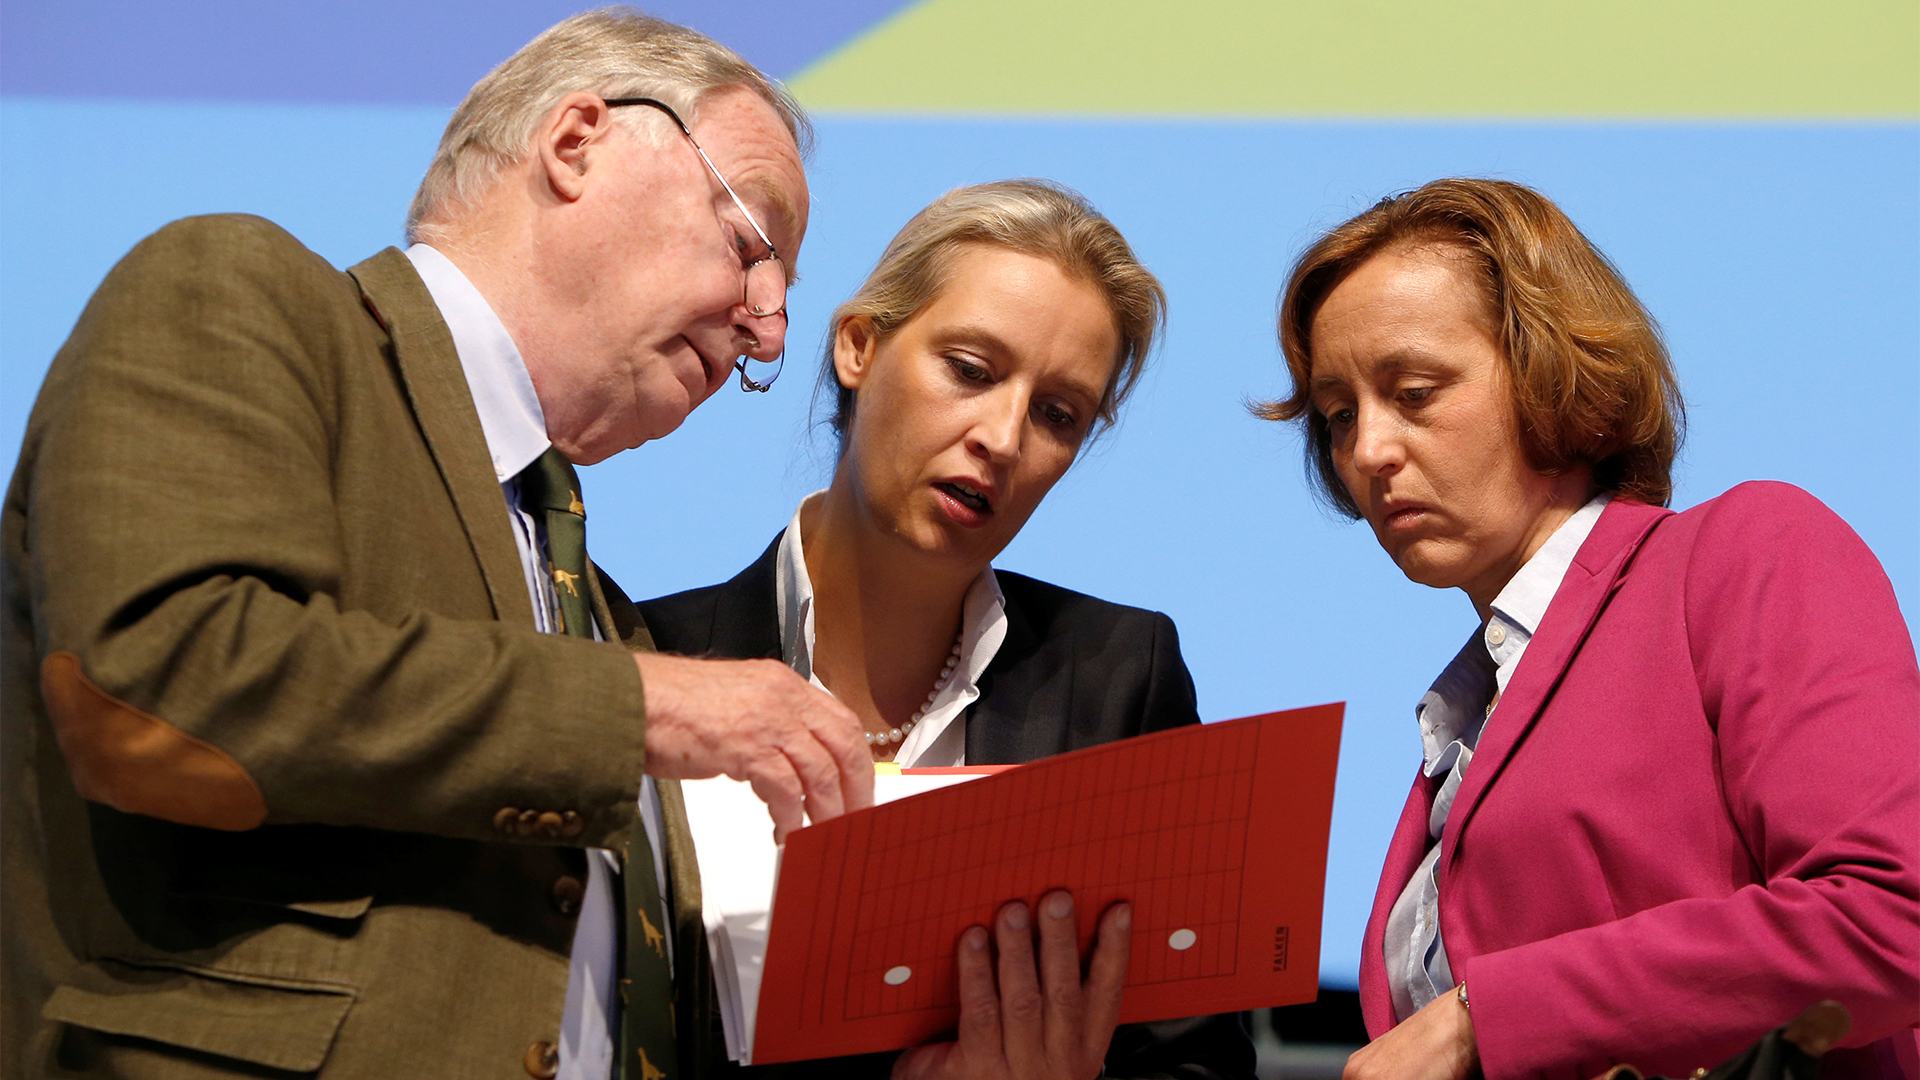 Alexander Gauland, Alice Weidel und Beatrix von Storch | Bildquelle: REUTERS